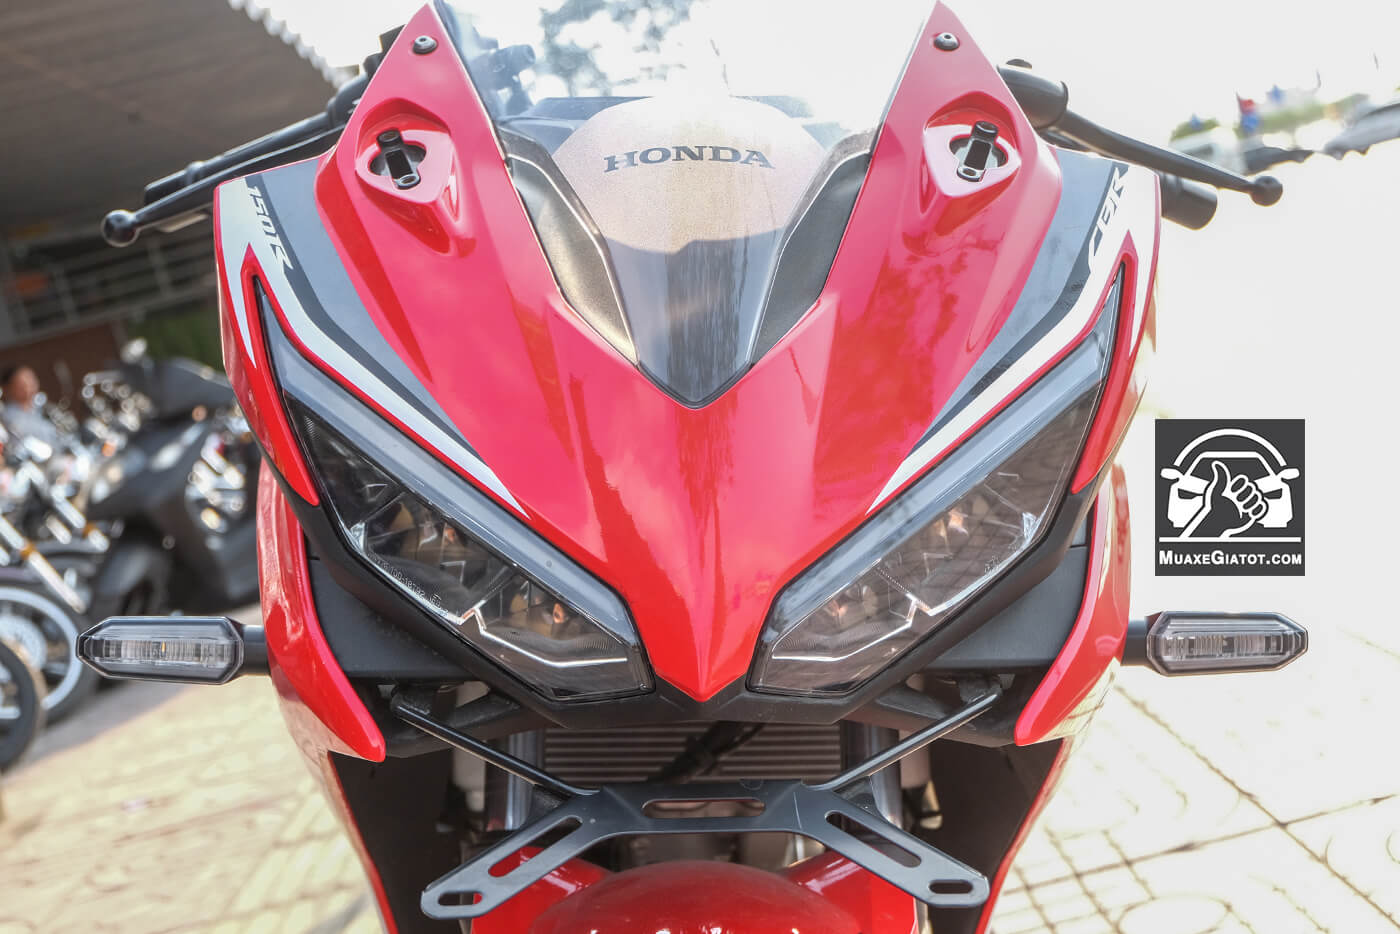 Honda CBR150R 2019 ra mắt giá chỉ từ 52 triệu đồng